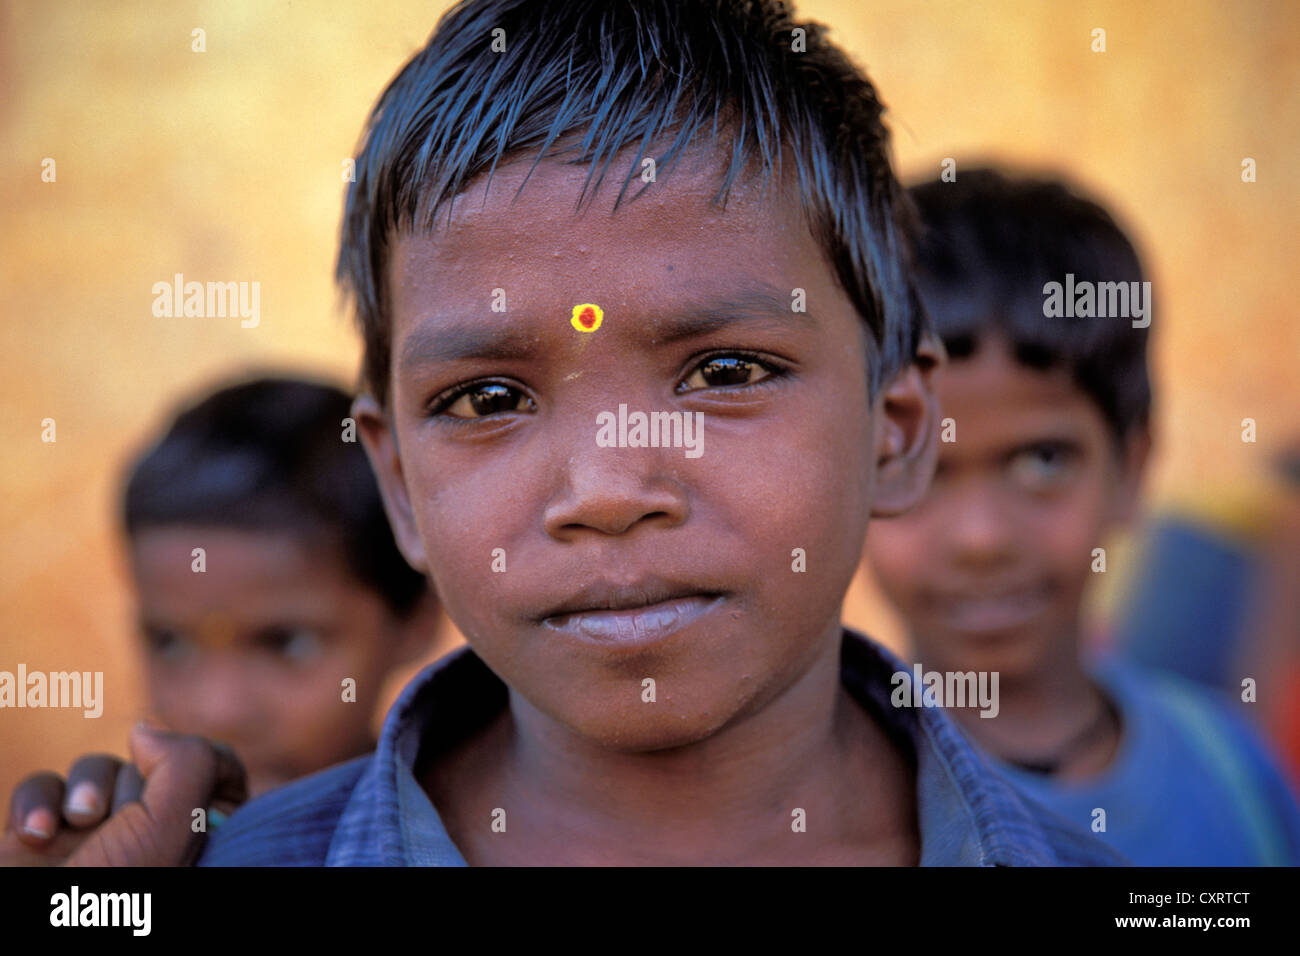 Boy, portrait, avec un bindi jaune sur son front, Karaikudi, Tamil Nadu, Inde du Sud, Inde, Asie Banque D'Images